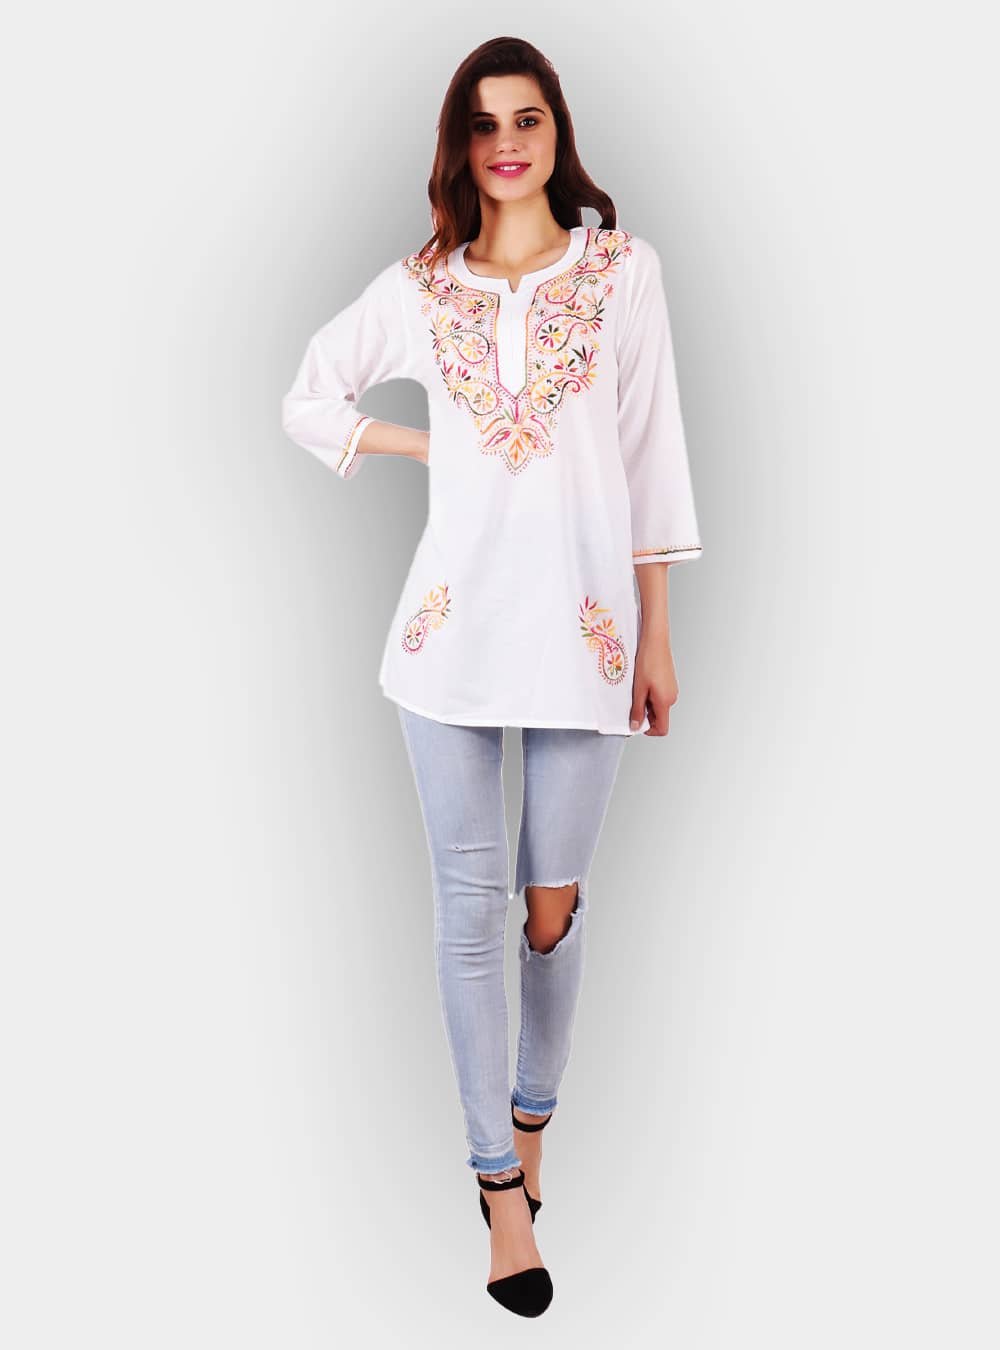 White Kota Cotton Short Top Tunic Lucknow Chikankari Kurta Kurti Handmade  Shirt | eBay